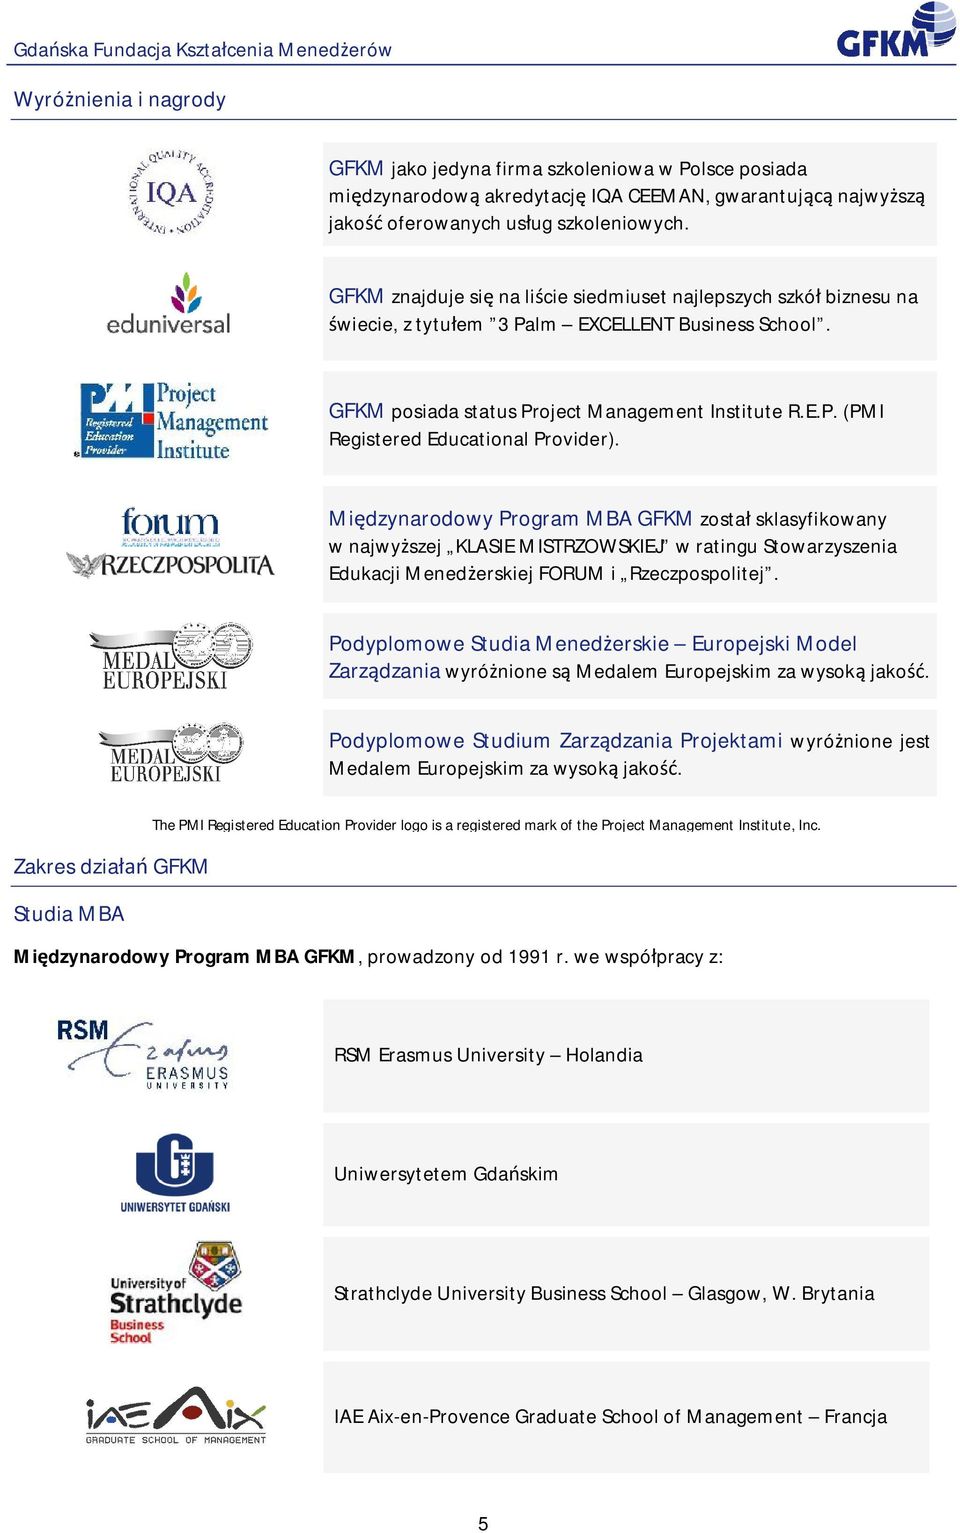 Mi dzynarodowy Program MBA GFKM zosta sklasyfikowany w najwy szej KLASIE MISTRZOWSKIEJ w ratingu Stowarzyszenia Edukacji Mened erskiej FORUM i Rzeczpospolitej.